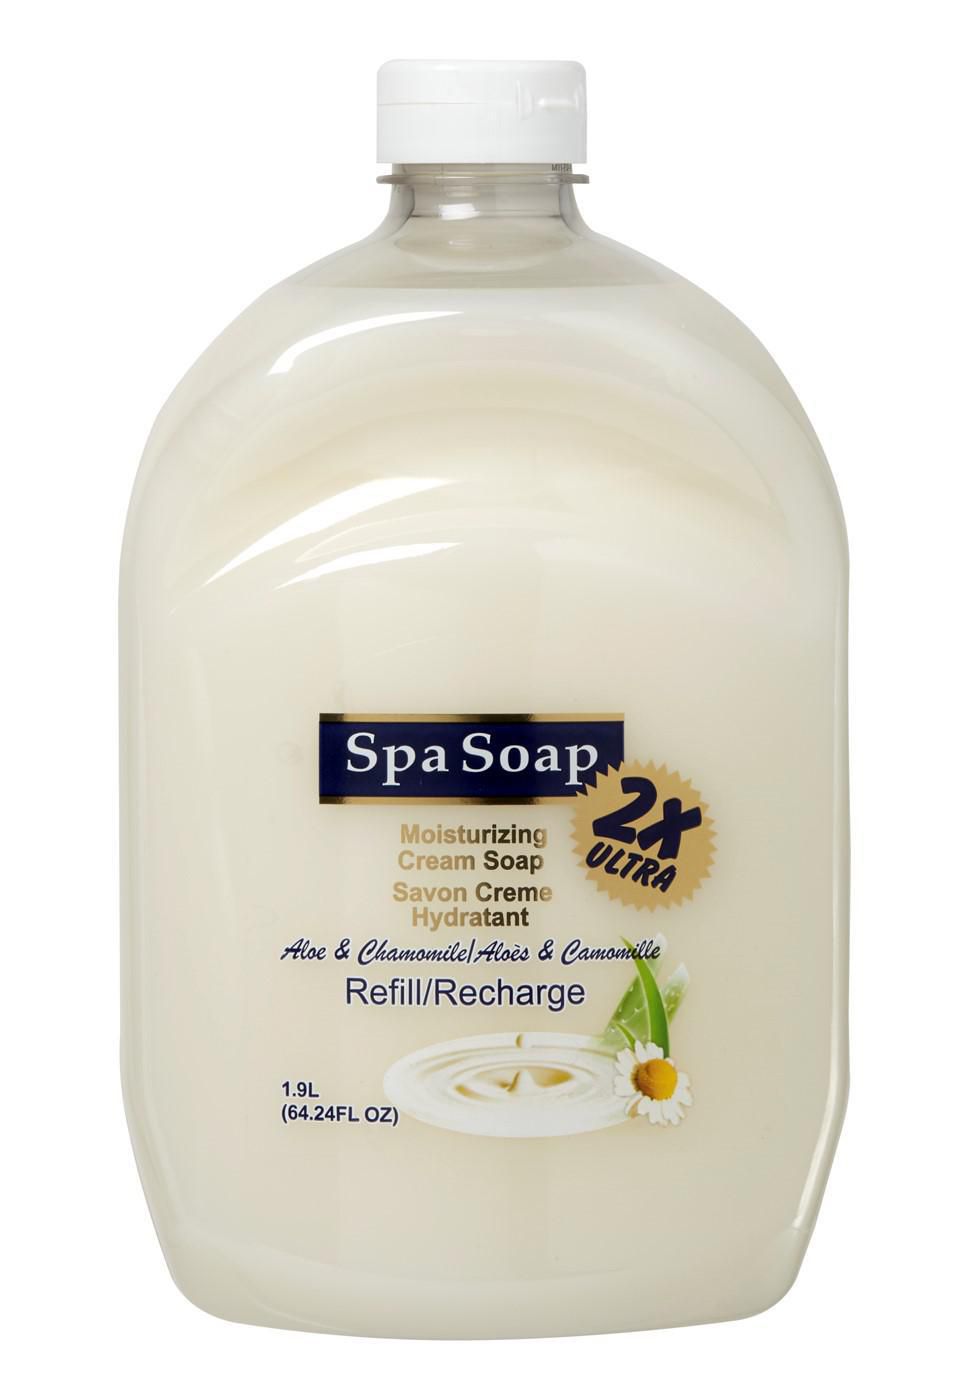 SpaSoap Ultra 2x Cream Soap Refill Aloe (1.9L)